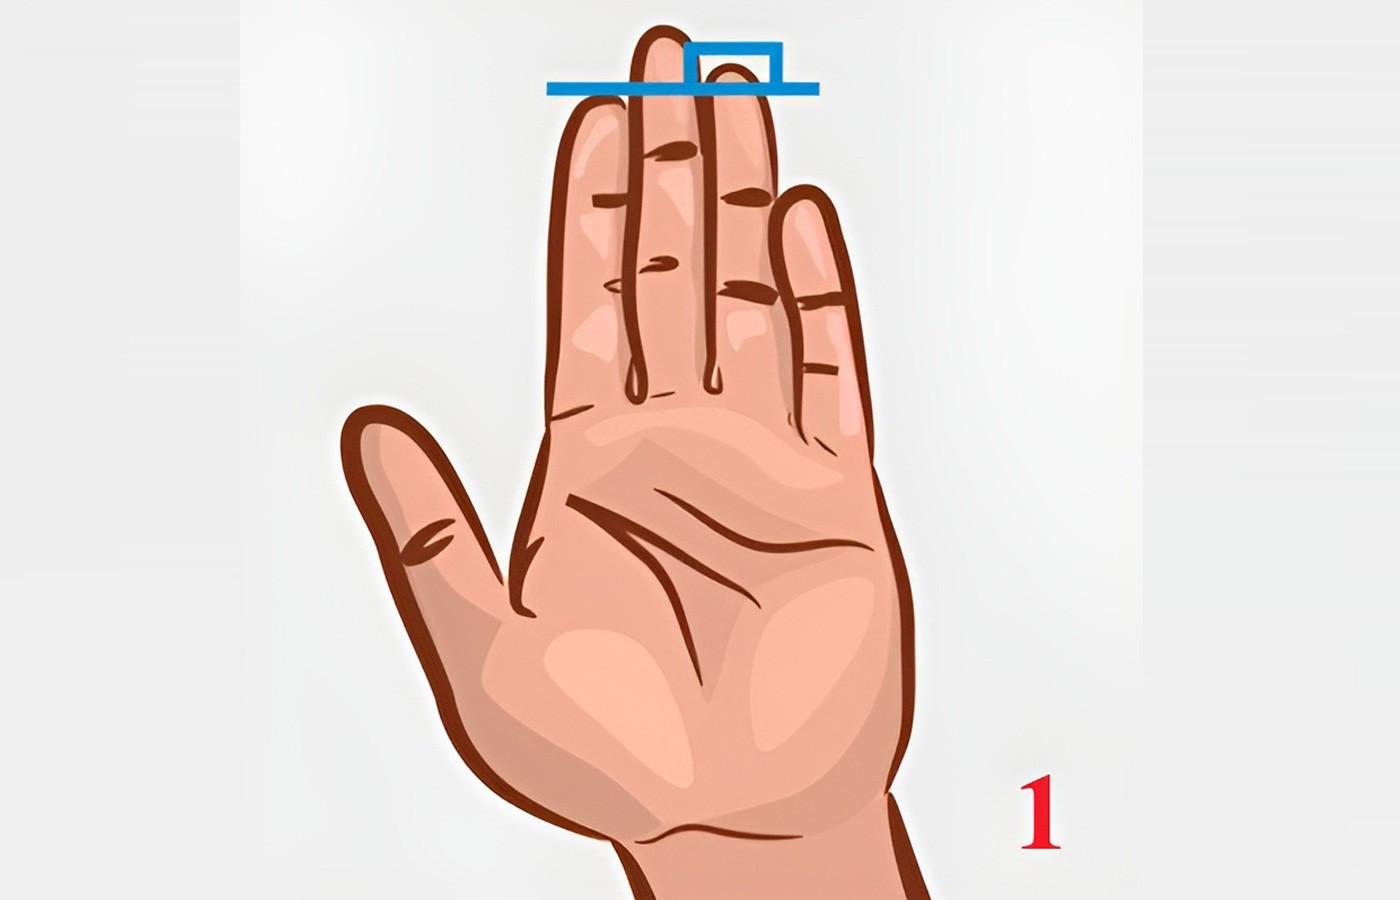 Độ dài của ngón tay trỏ có thể hé lộ thông tin về tính cách của một người